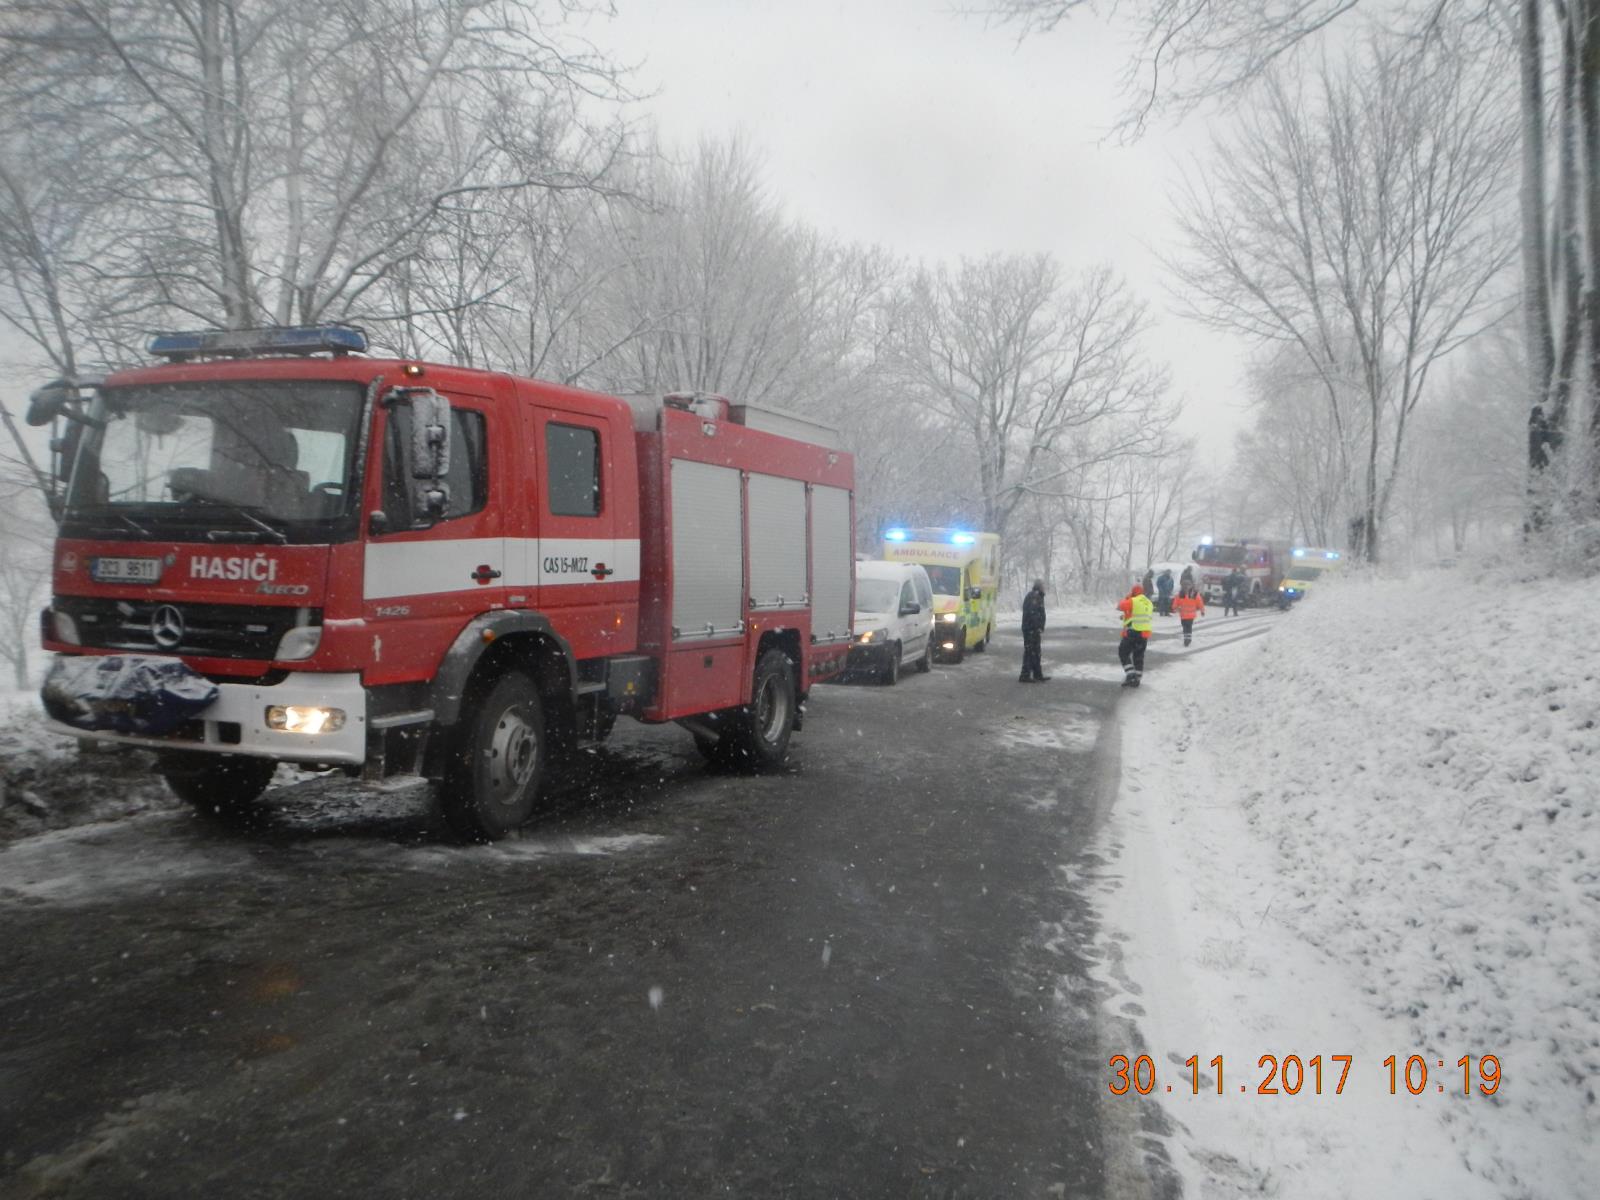 Dopravní nehoda autobusu, Ločenice - 30. 11. 2017 (3).JPG